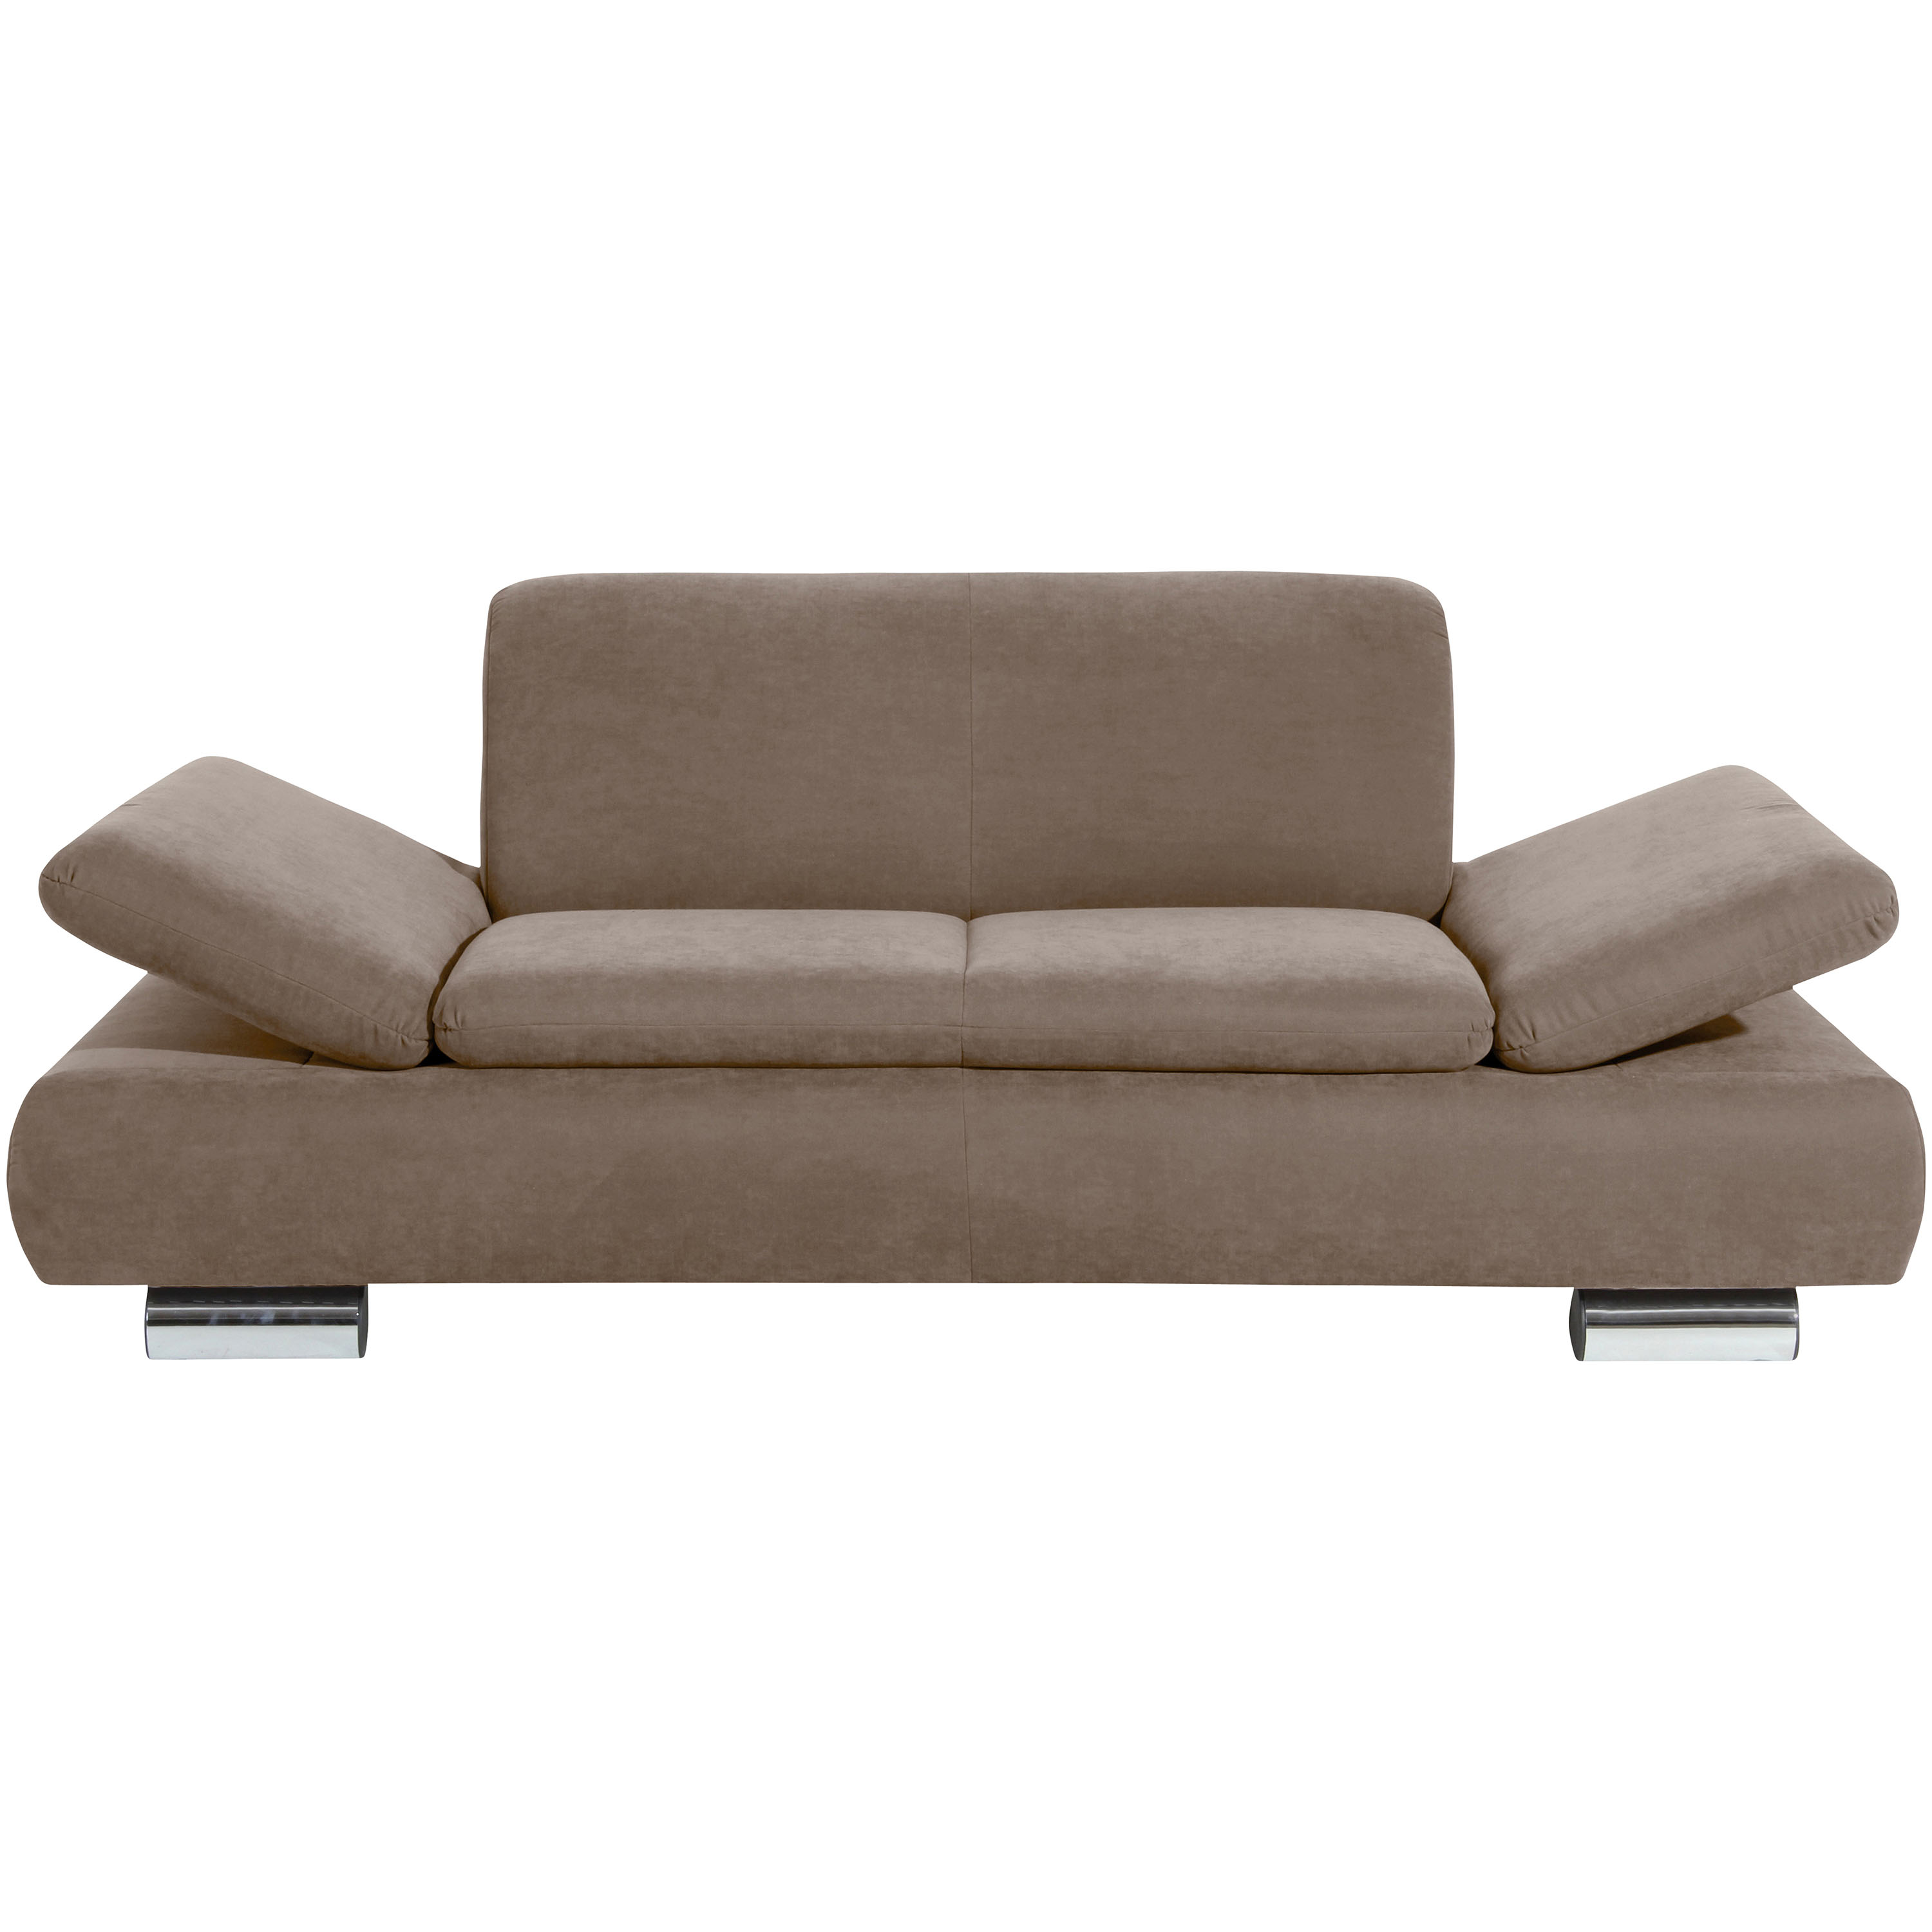 frontansicht von einem 2-sitzer sofa mit hochgeklappten armteilen und verchromten metallfüssen